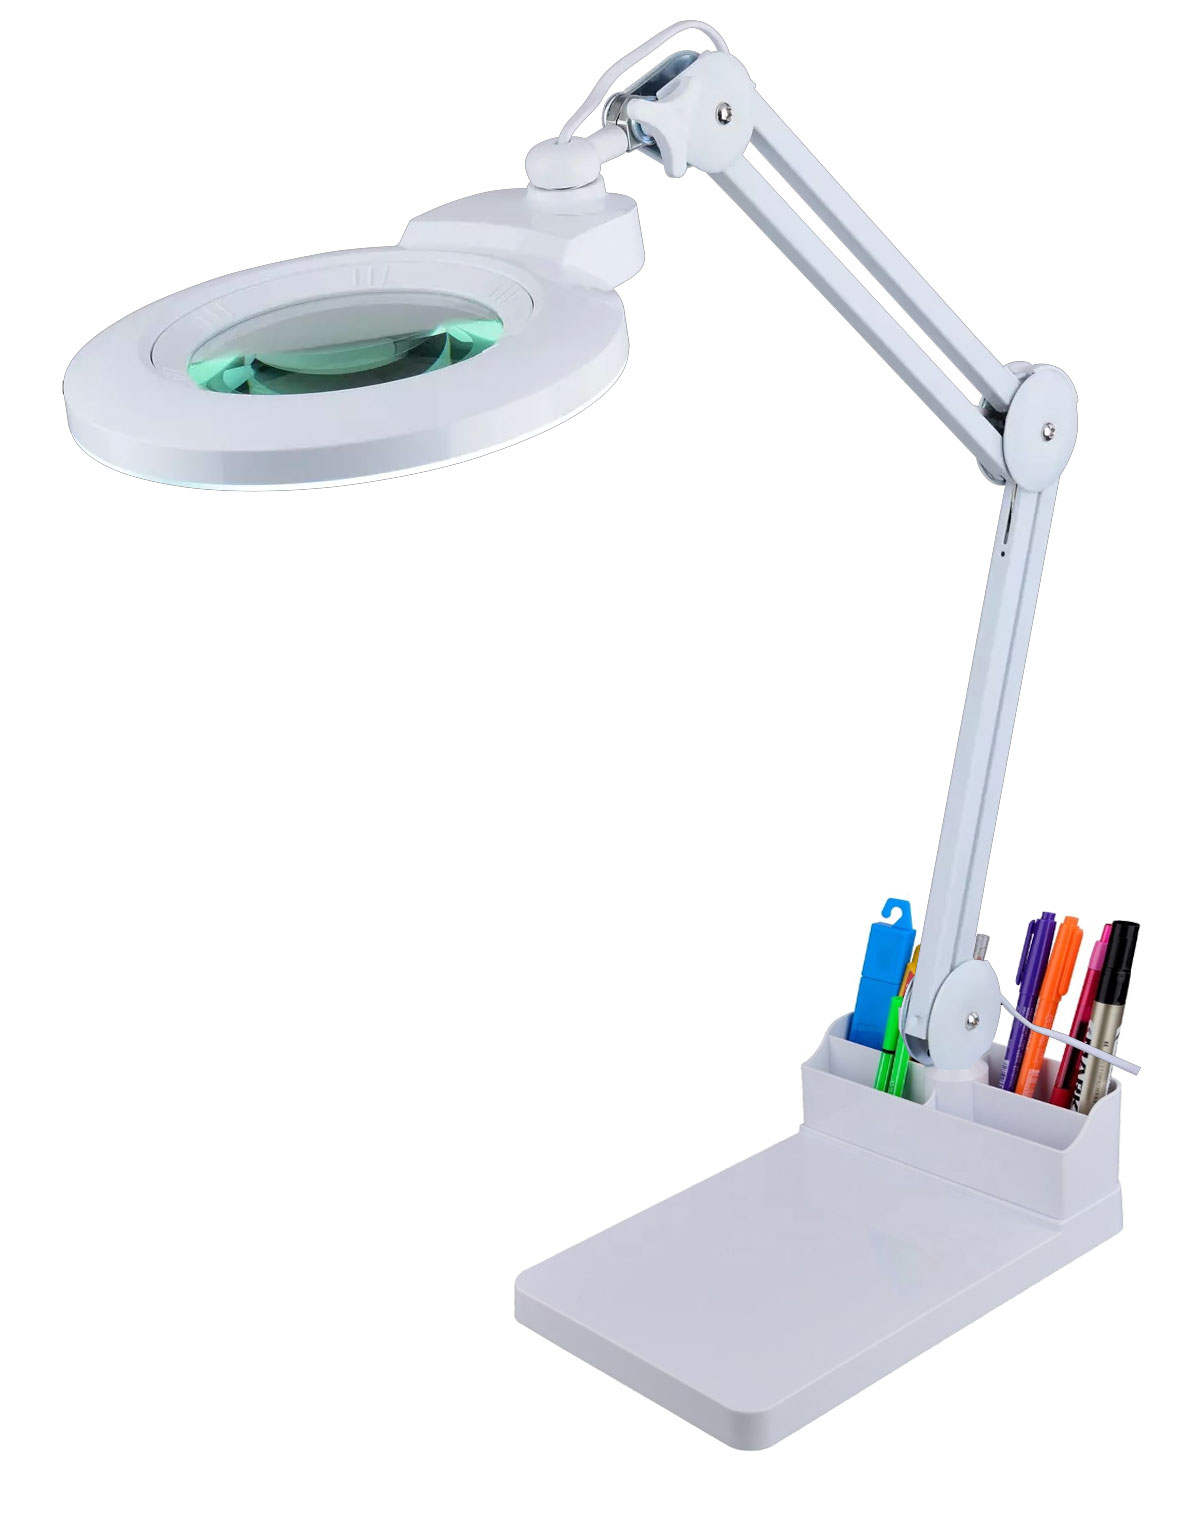 LAM-057 prostokątna podstawa na stół do lampy z lupą, podstawka biurkowa do lamp z lupą, podstawka na blat do lampy z lupą,